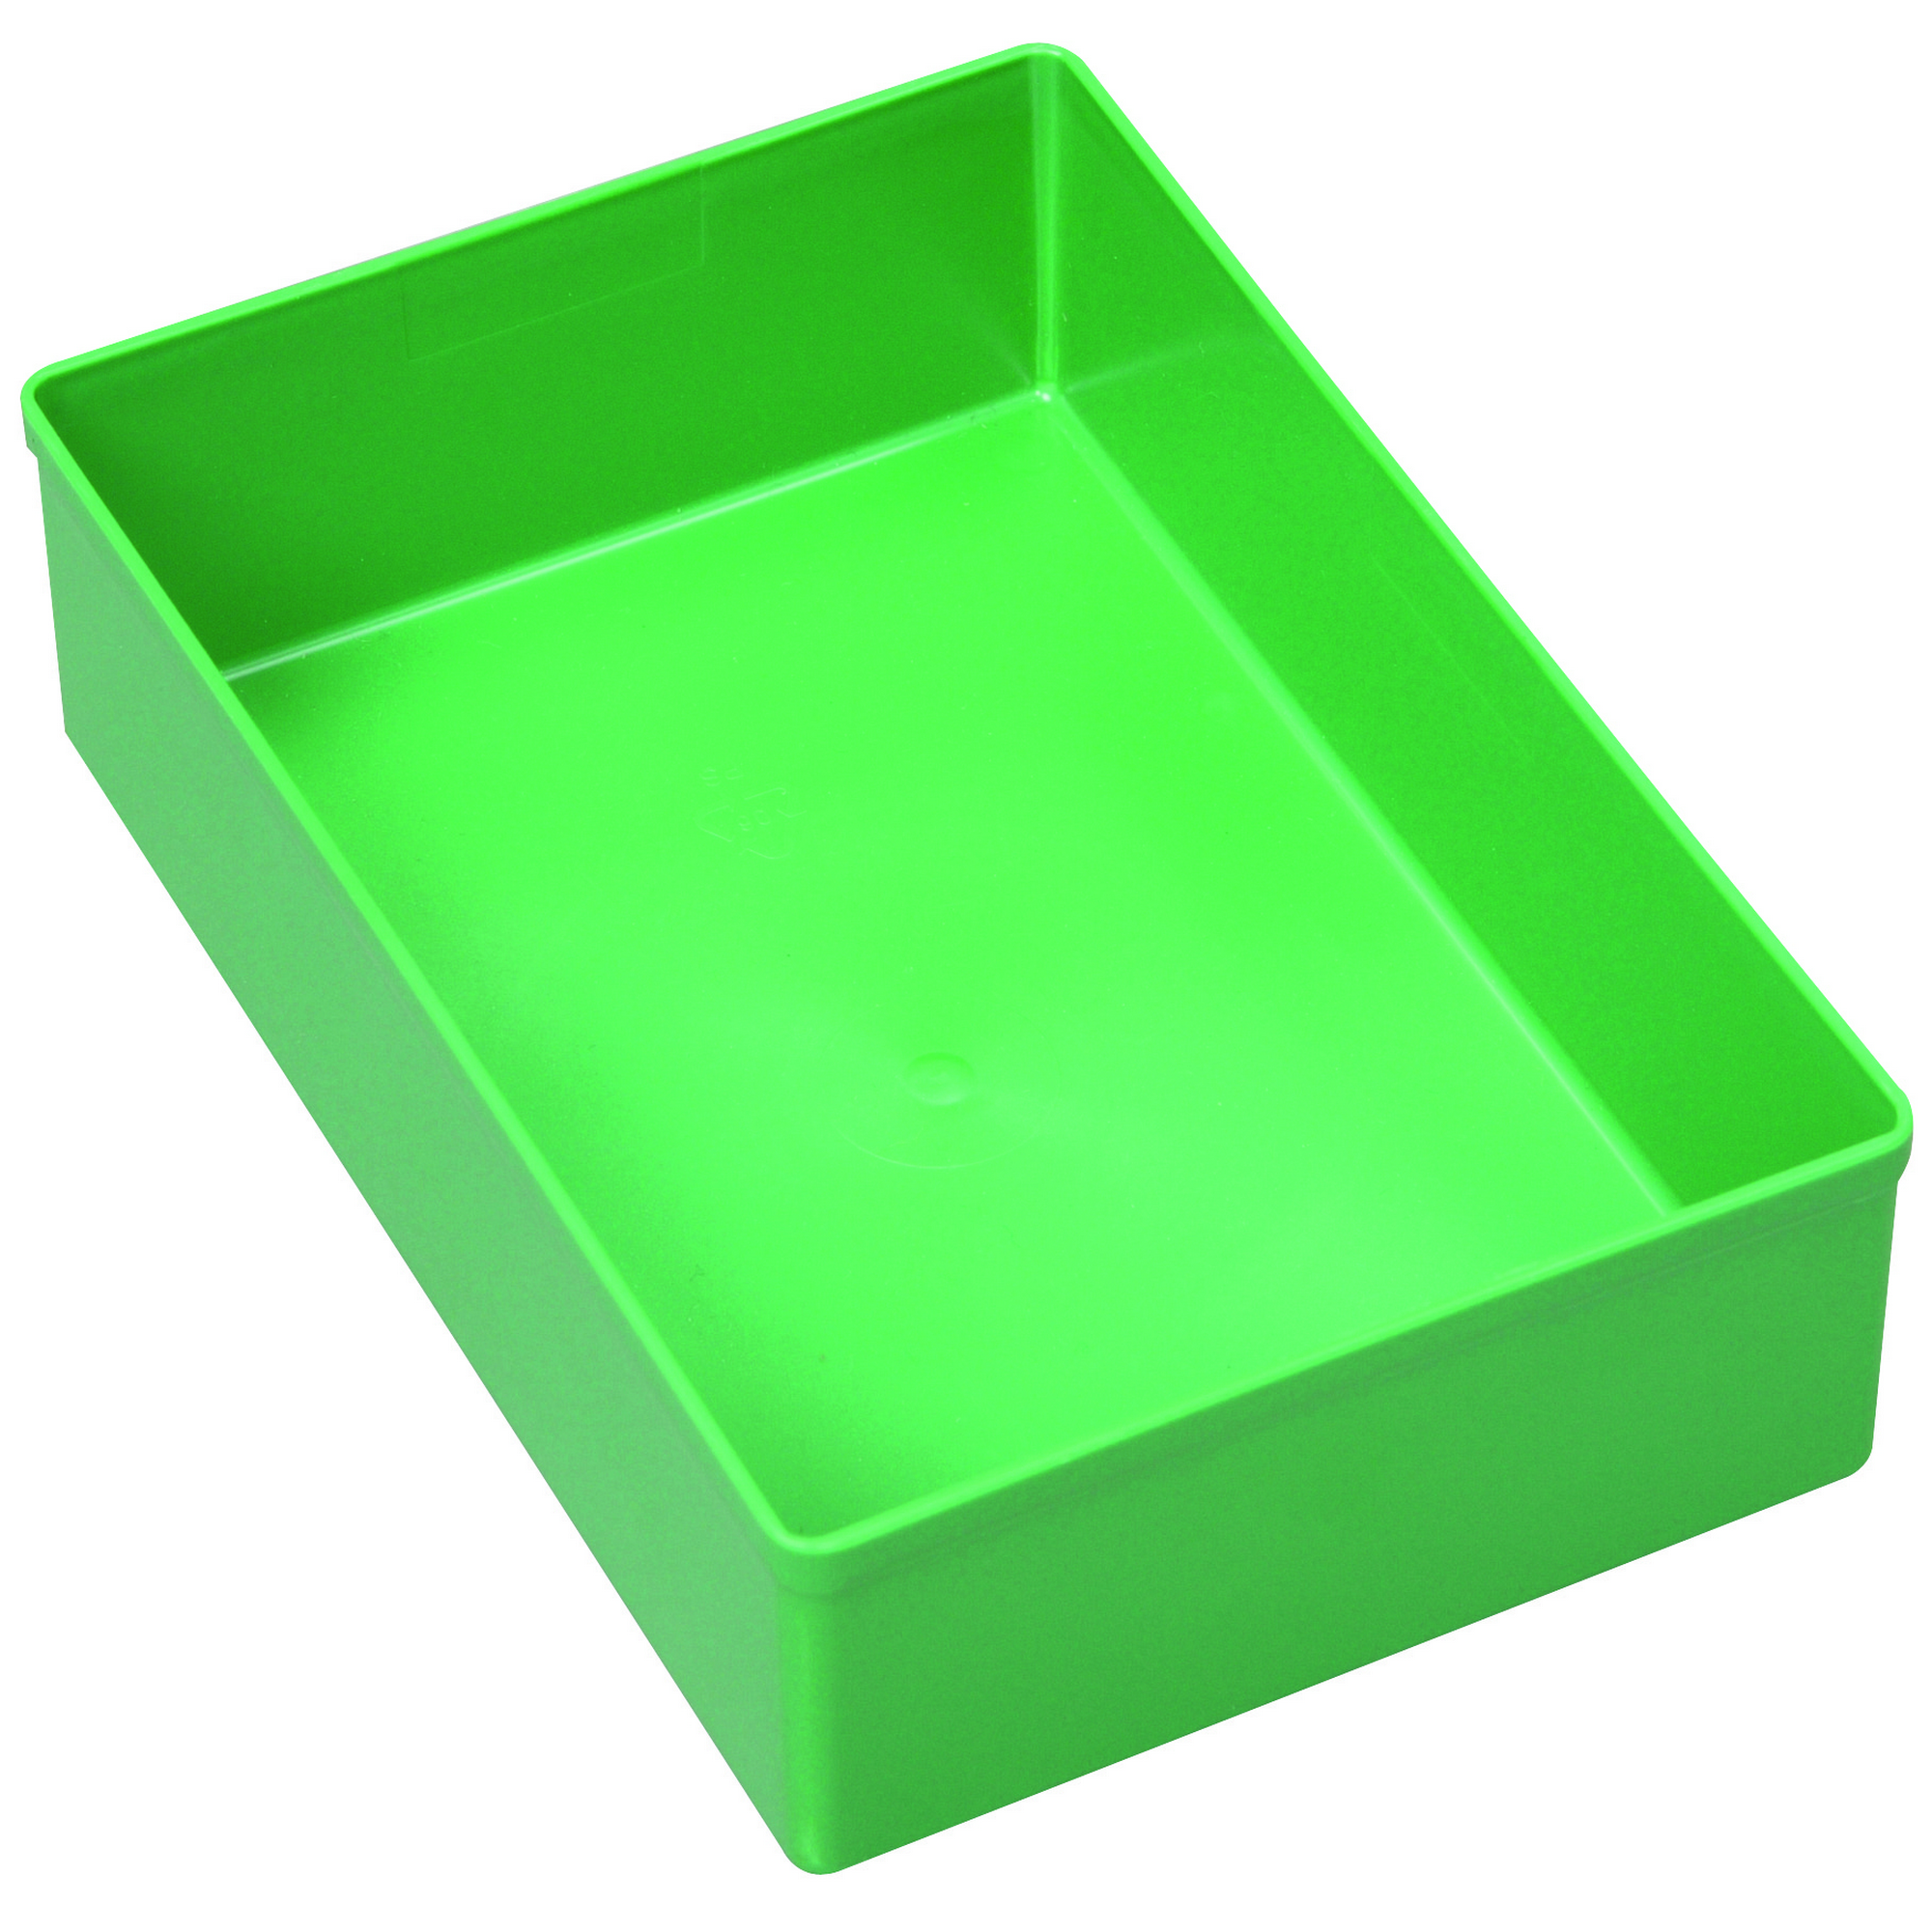 EuroPlusEinsatzbox 'Insert 45/4' Größe 4 grün + product picture